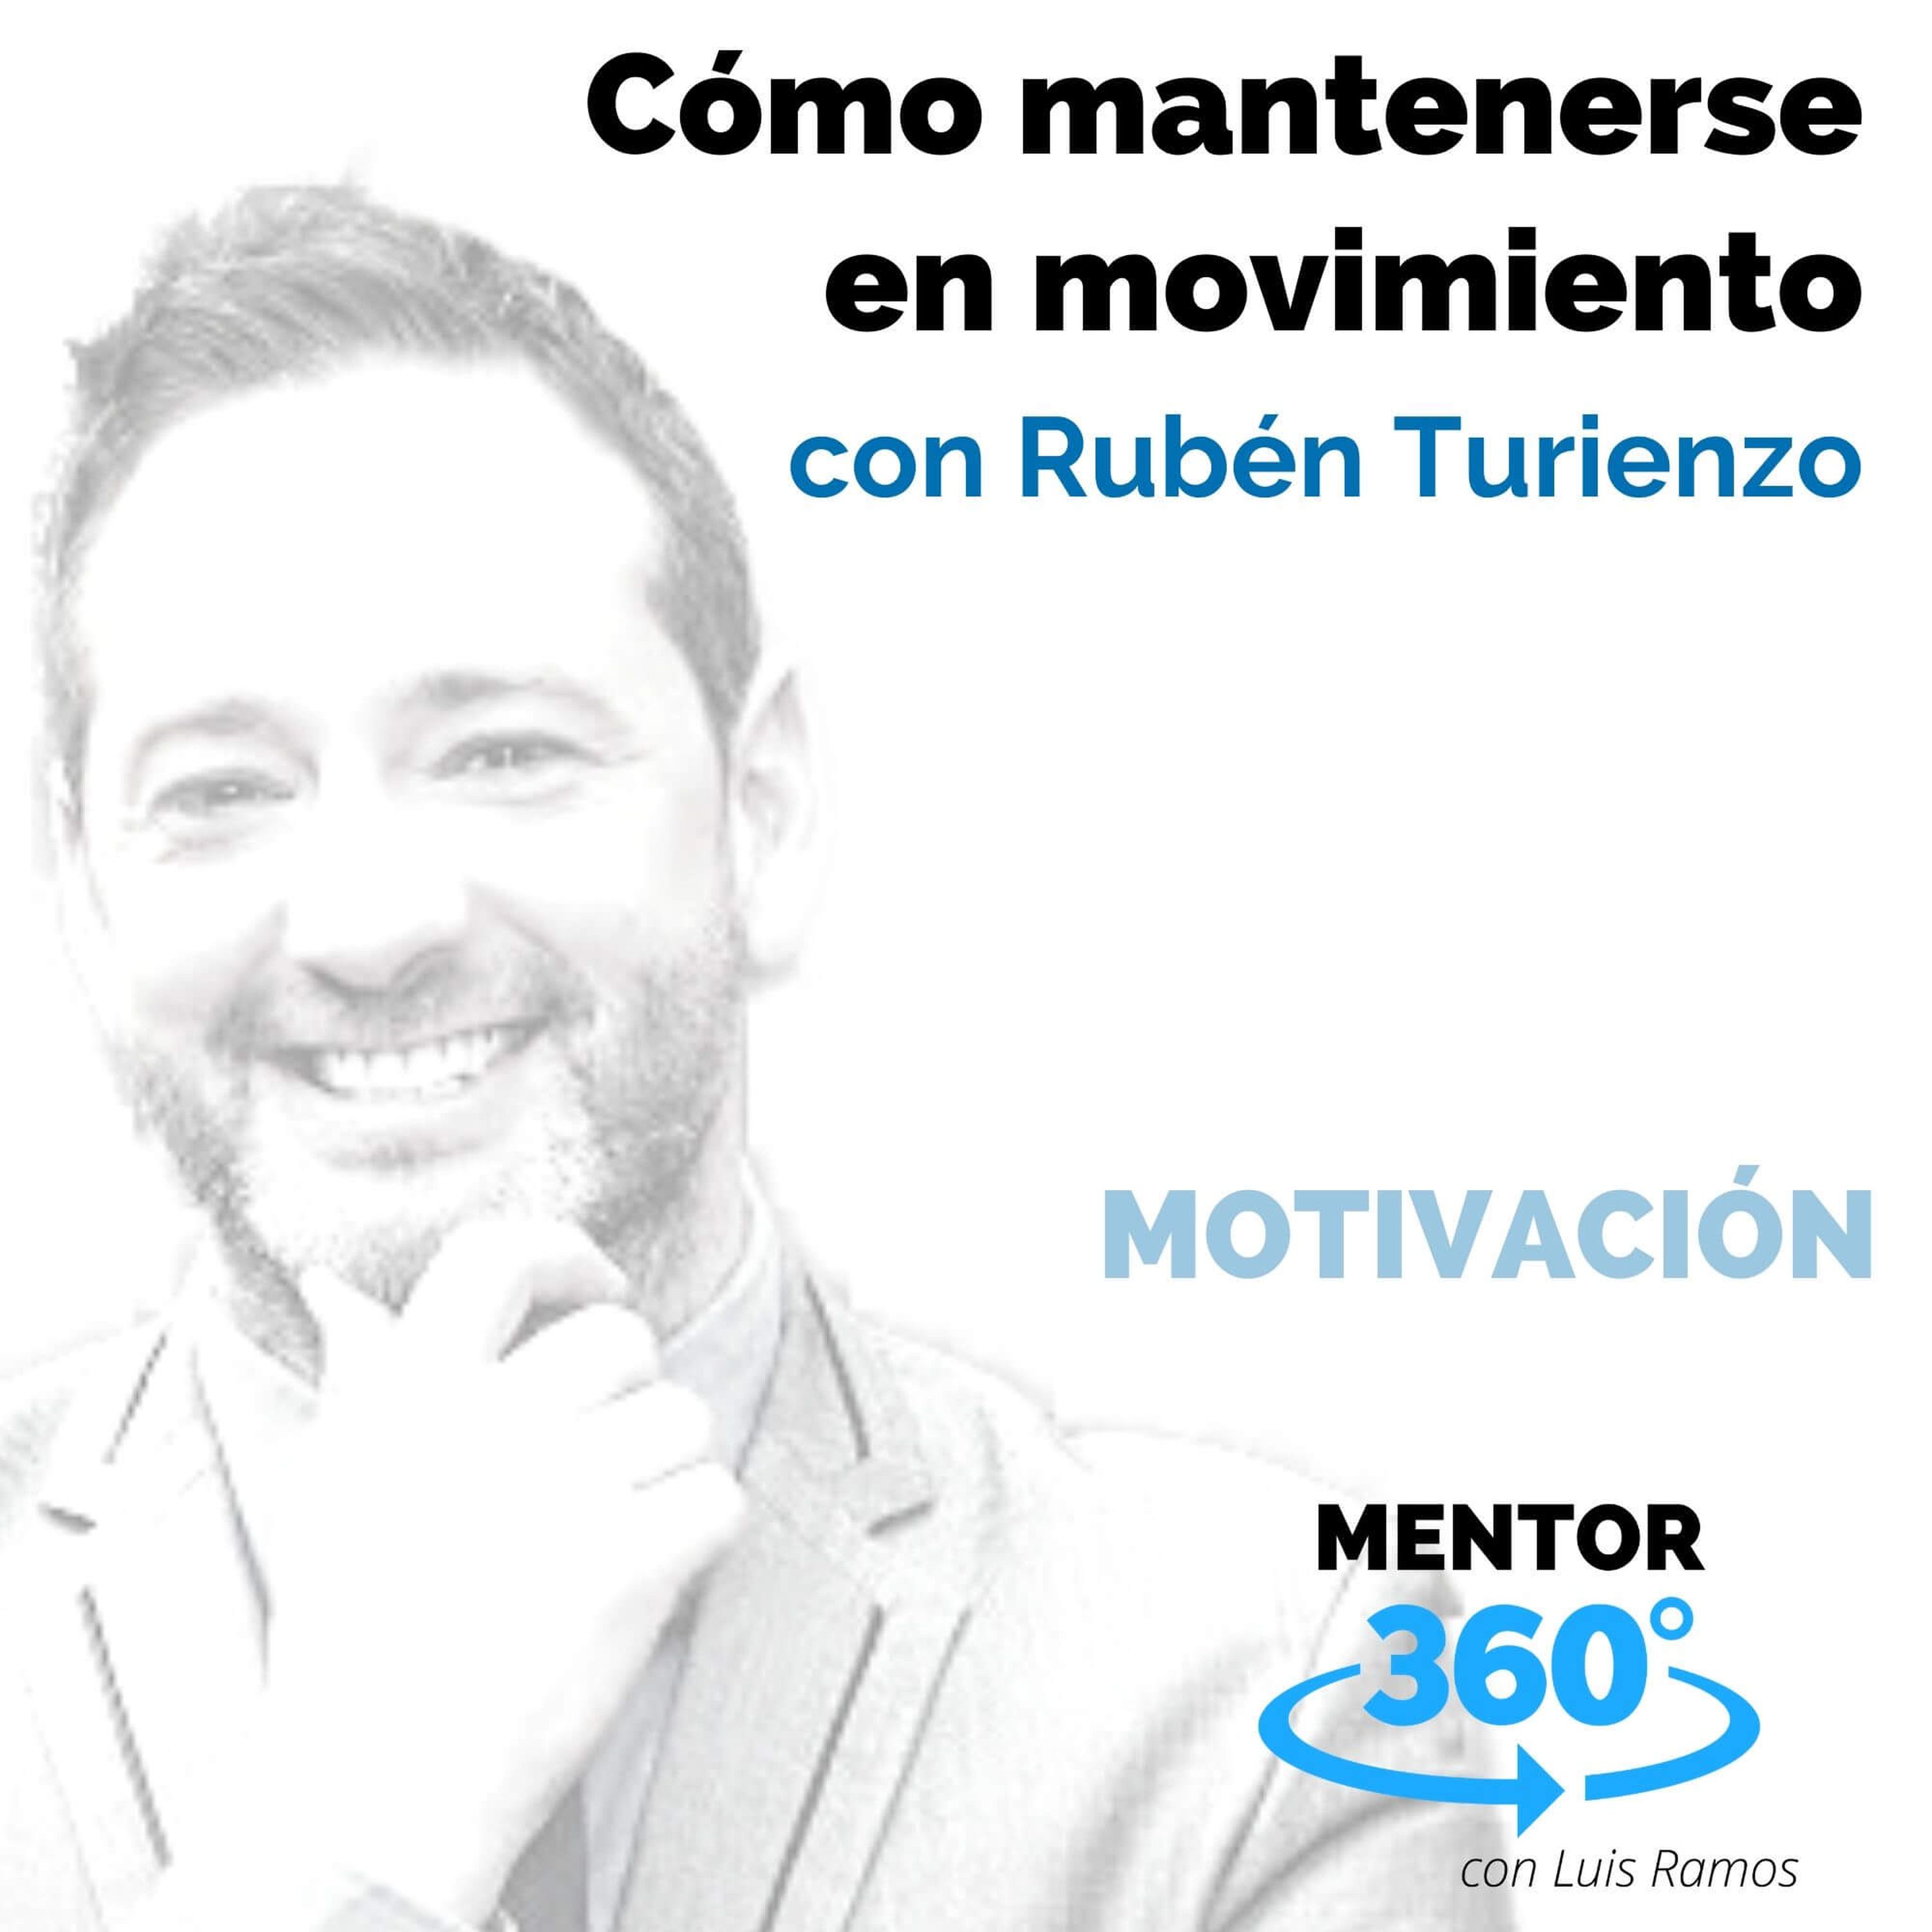 Cómo mantenerse en movimiento, con Rubén Turienzo - MOTIVACIÓN